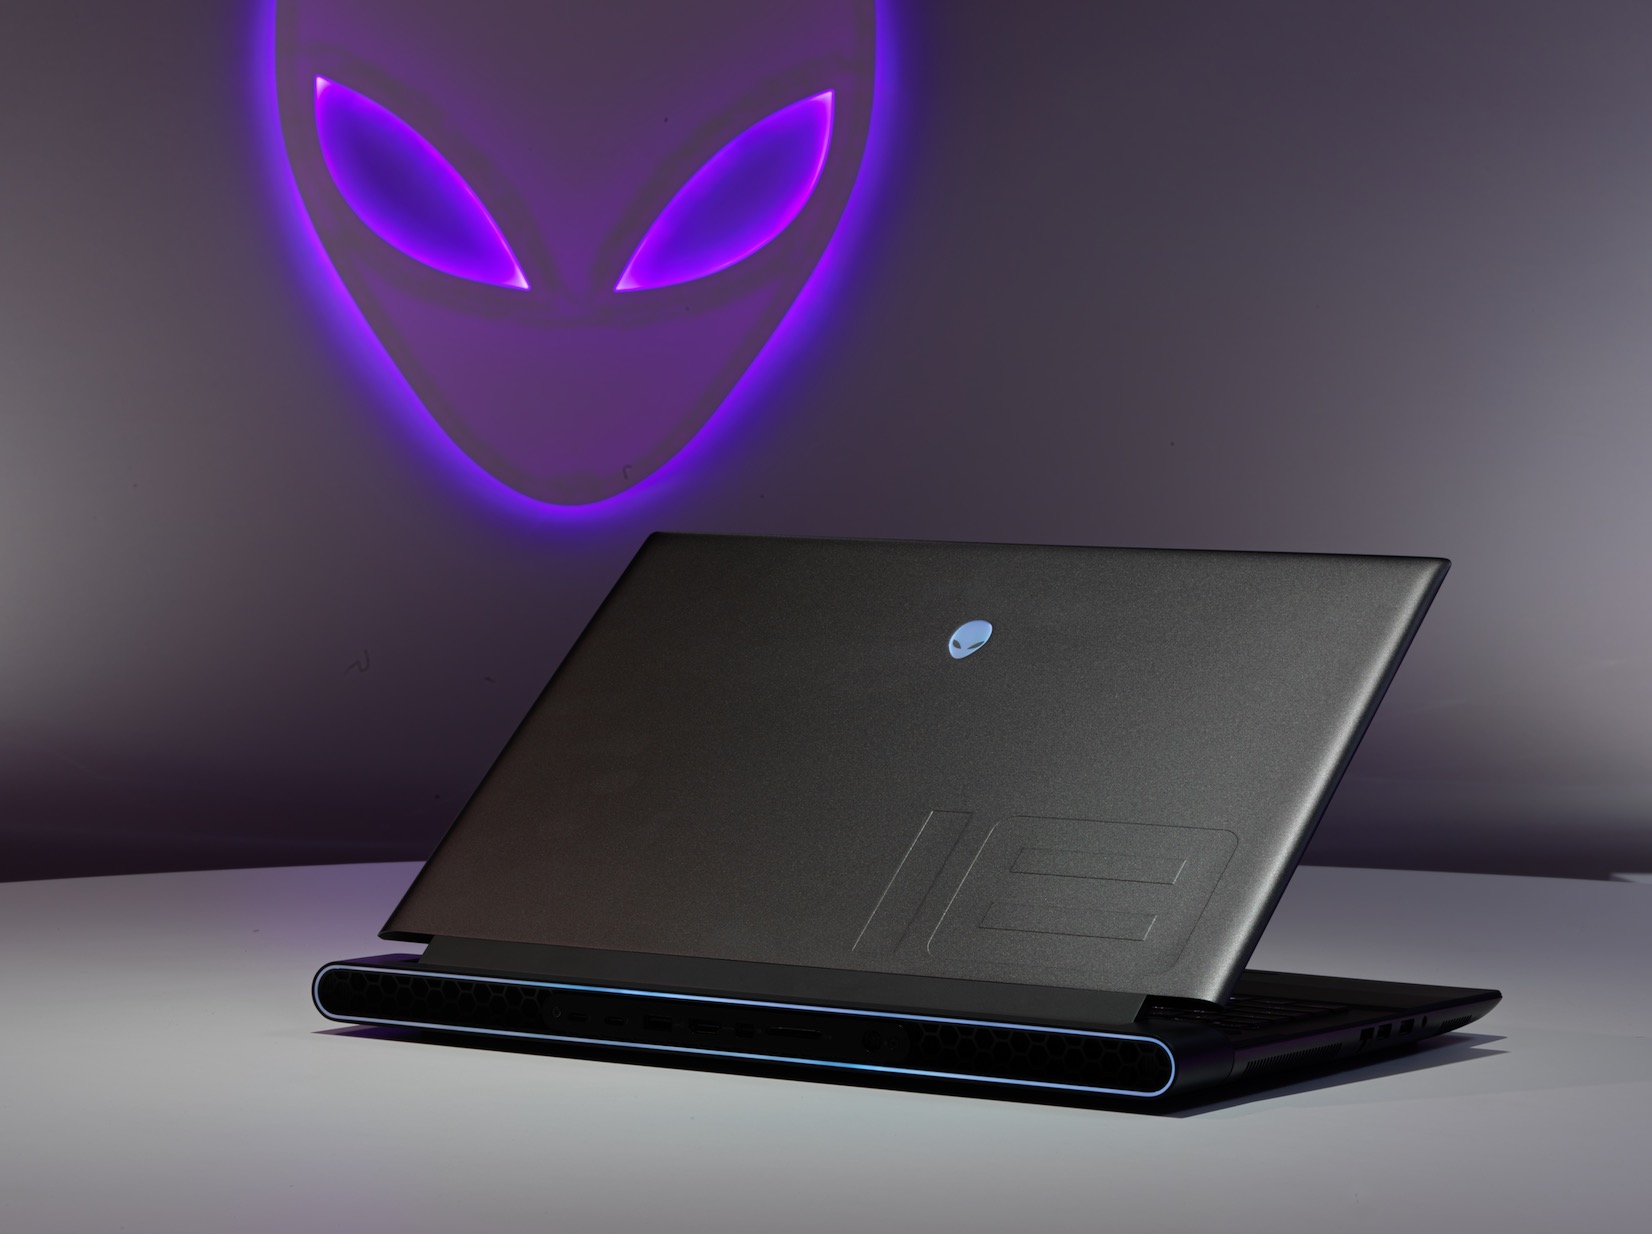 Dell embrasse les (très) grands formats avec ses nouveaux PC portables gaming Alienware